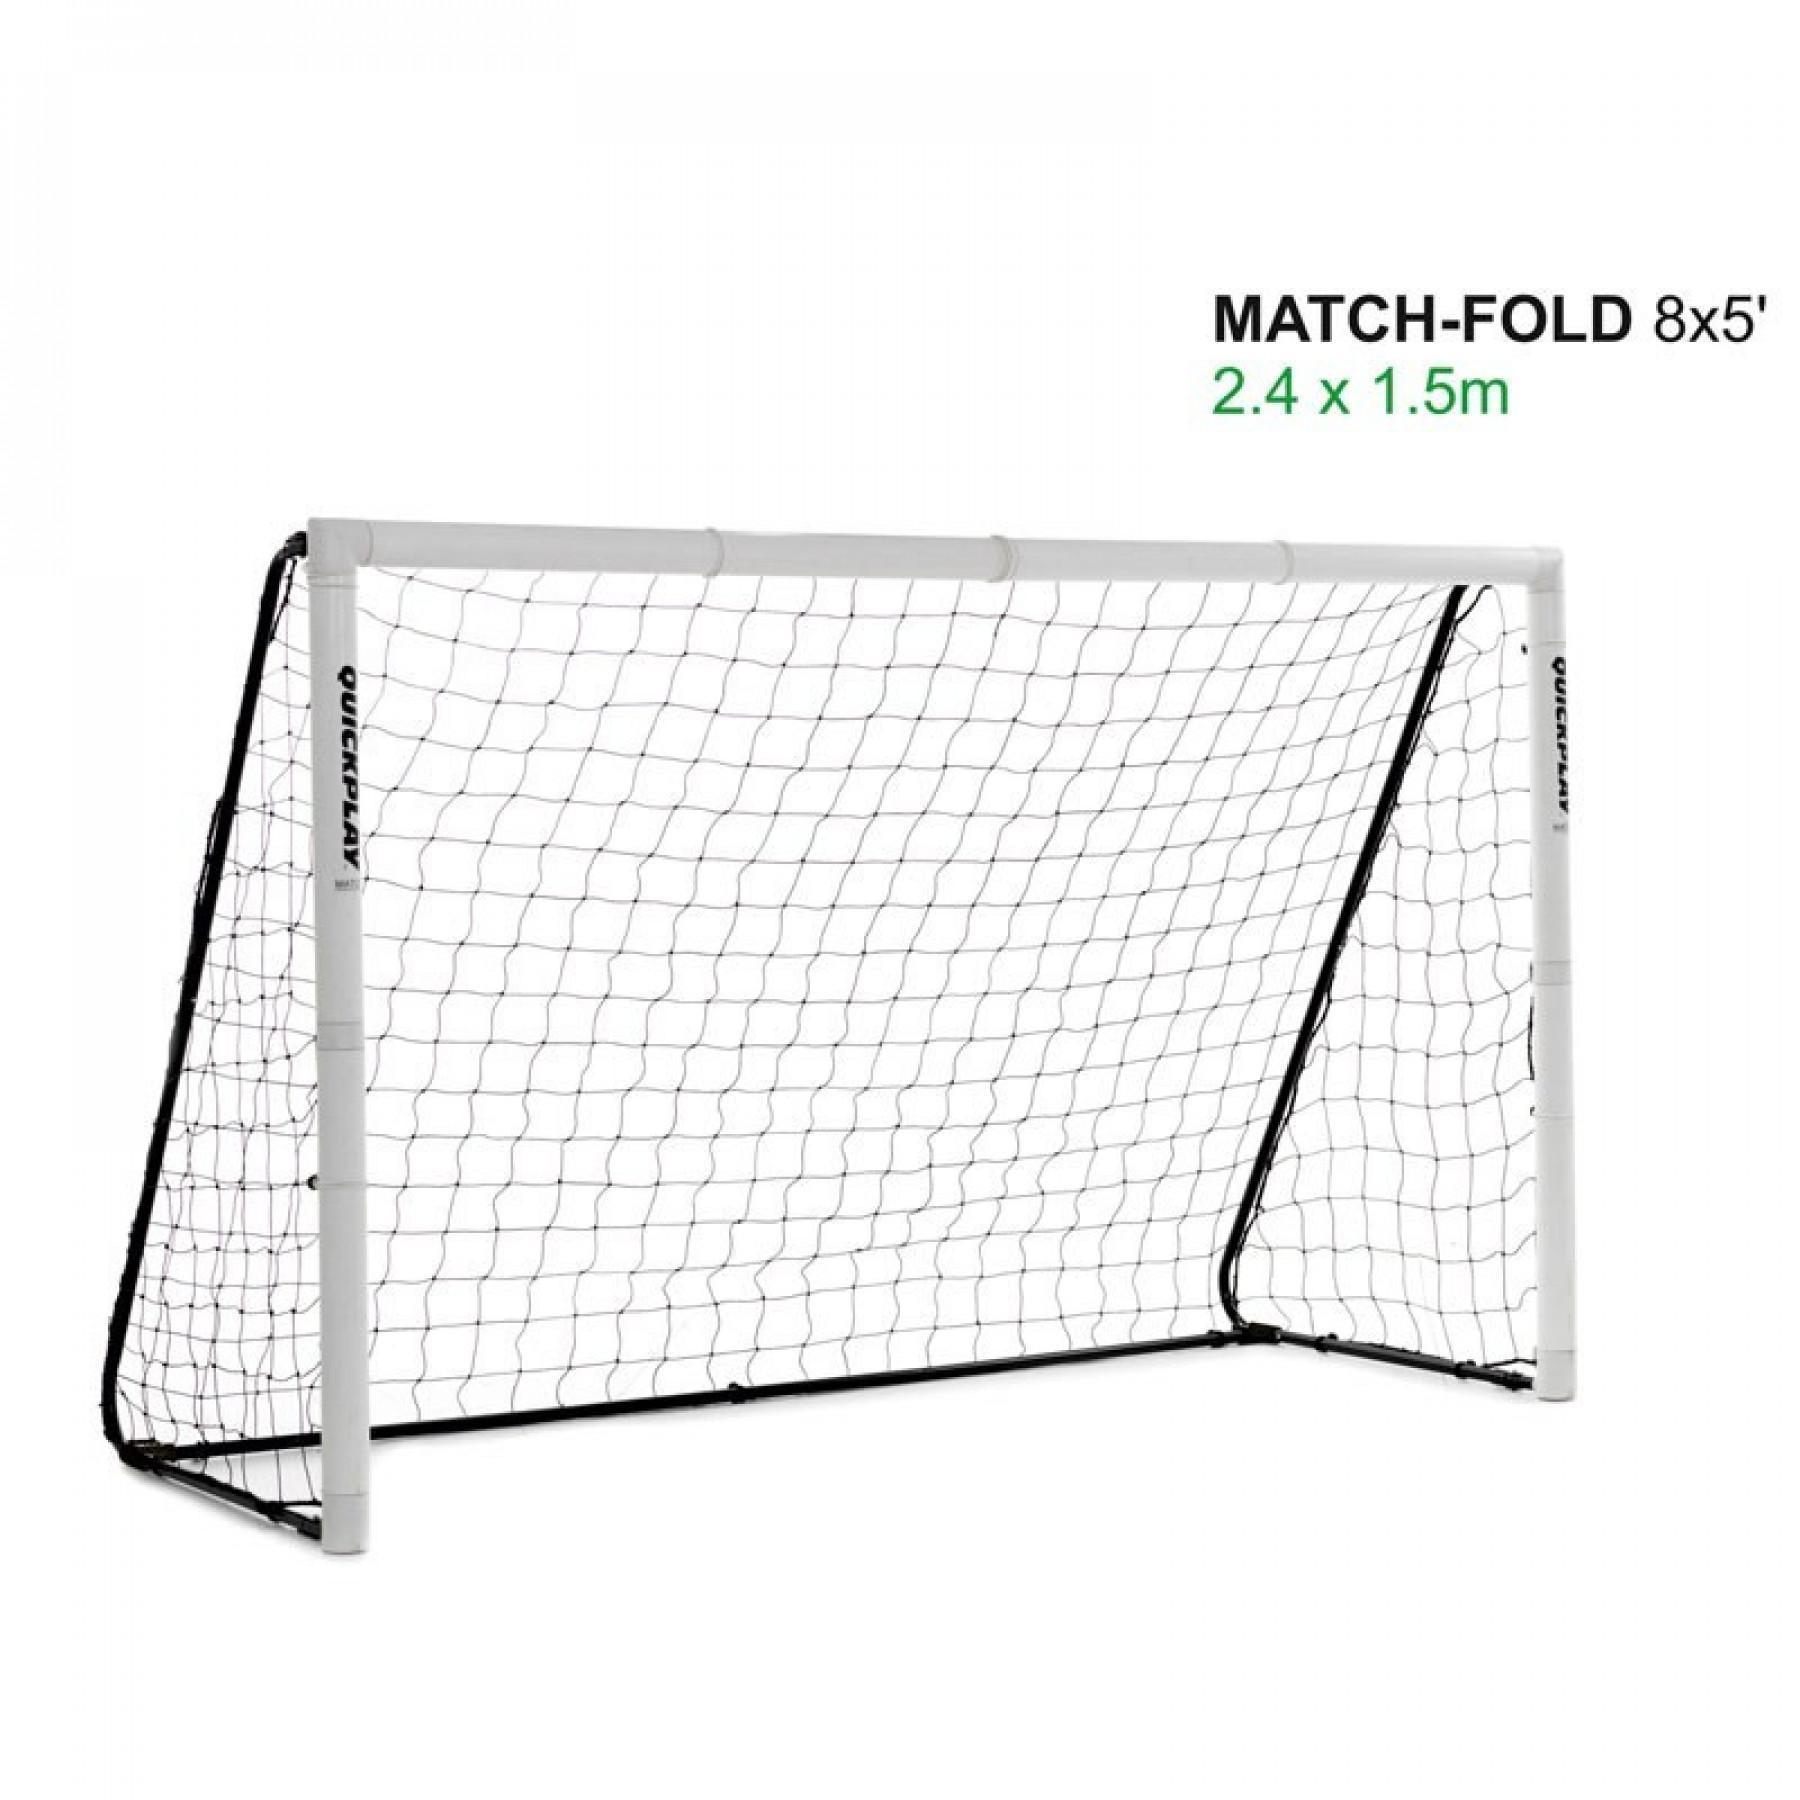 Składana bramka do piłki nożnej Quickplay Match Fold 1,5m x 2,4m